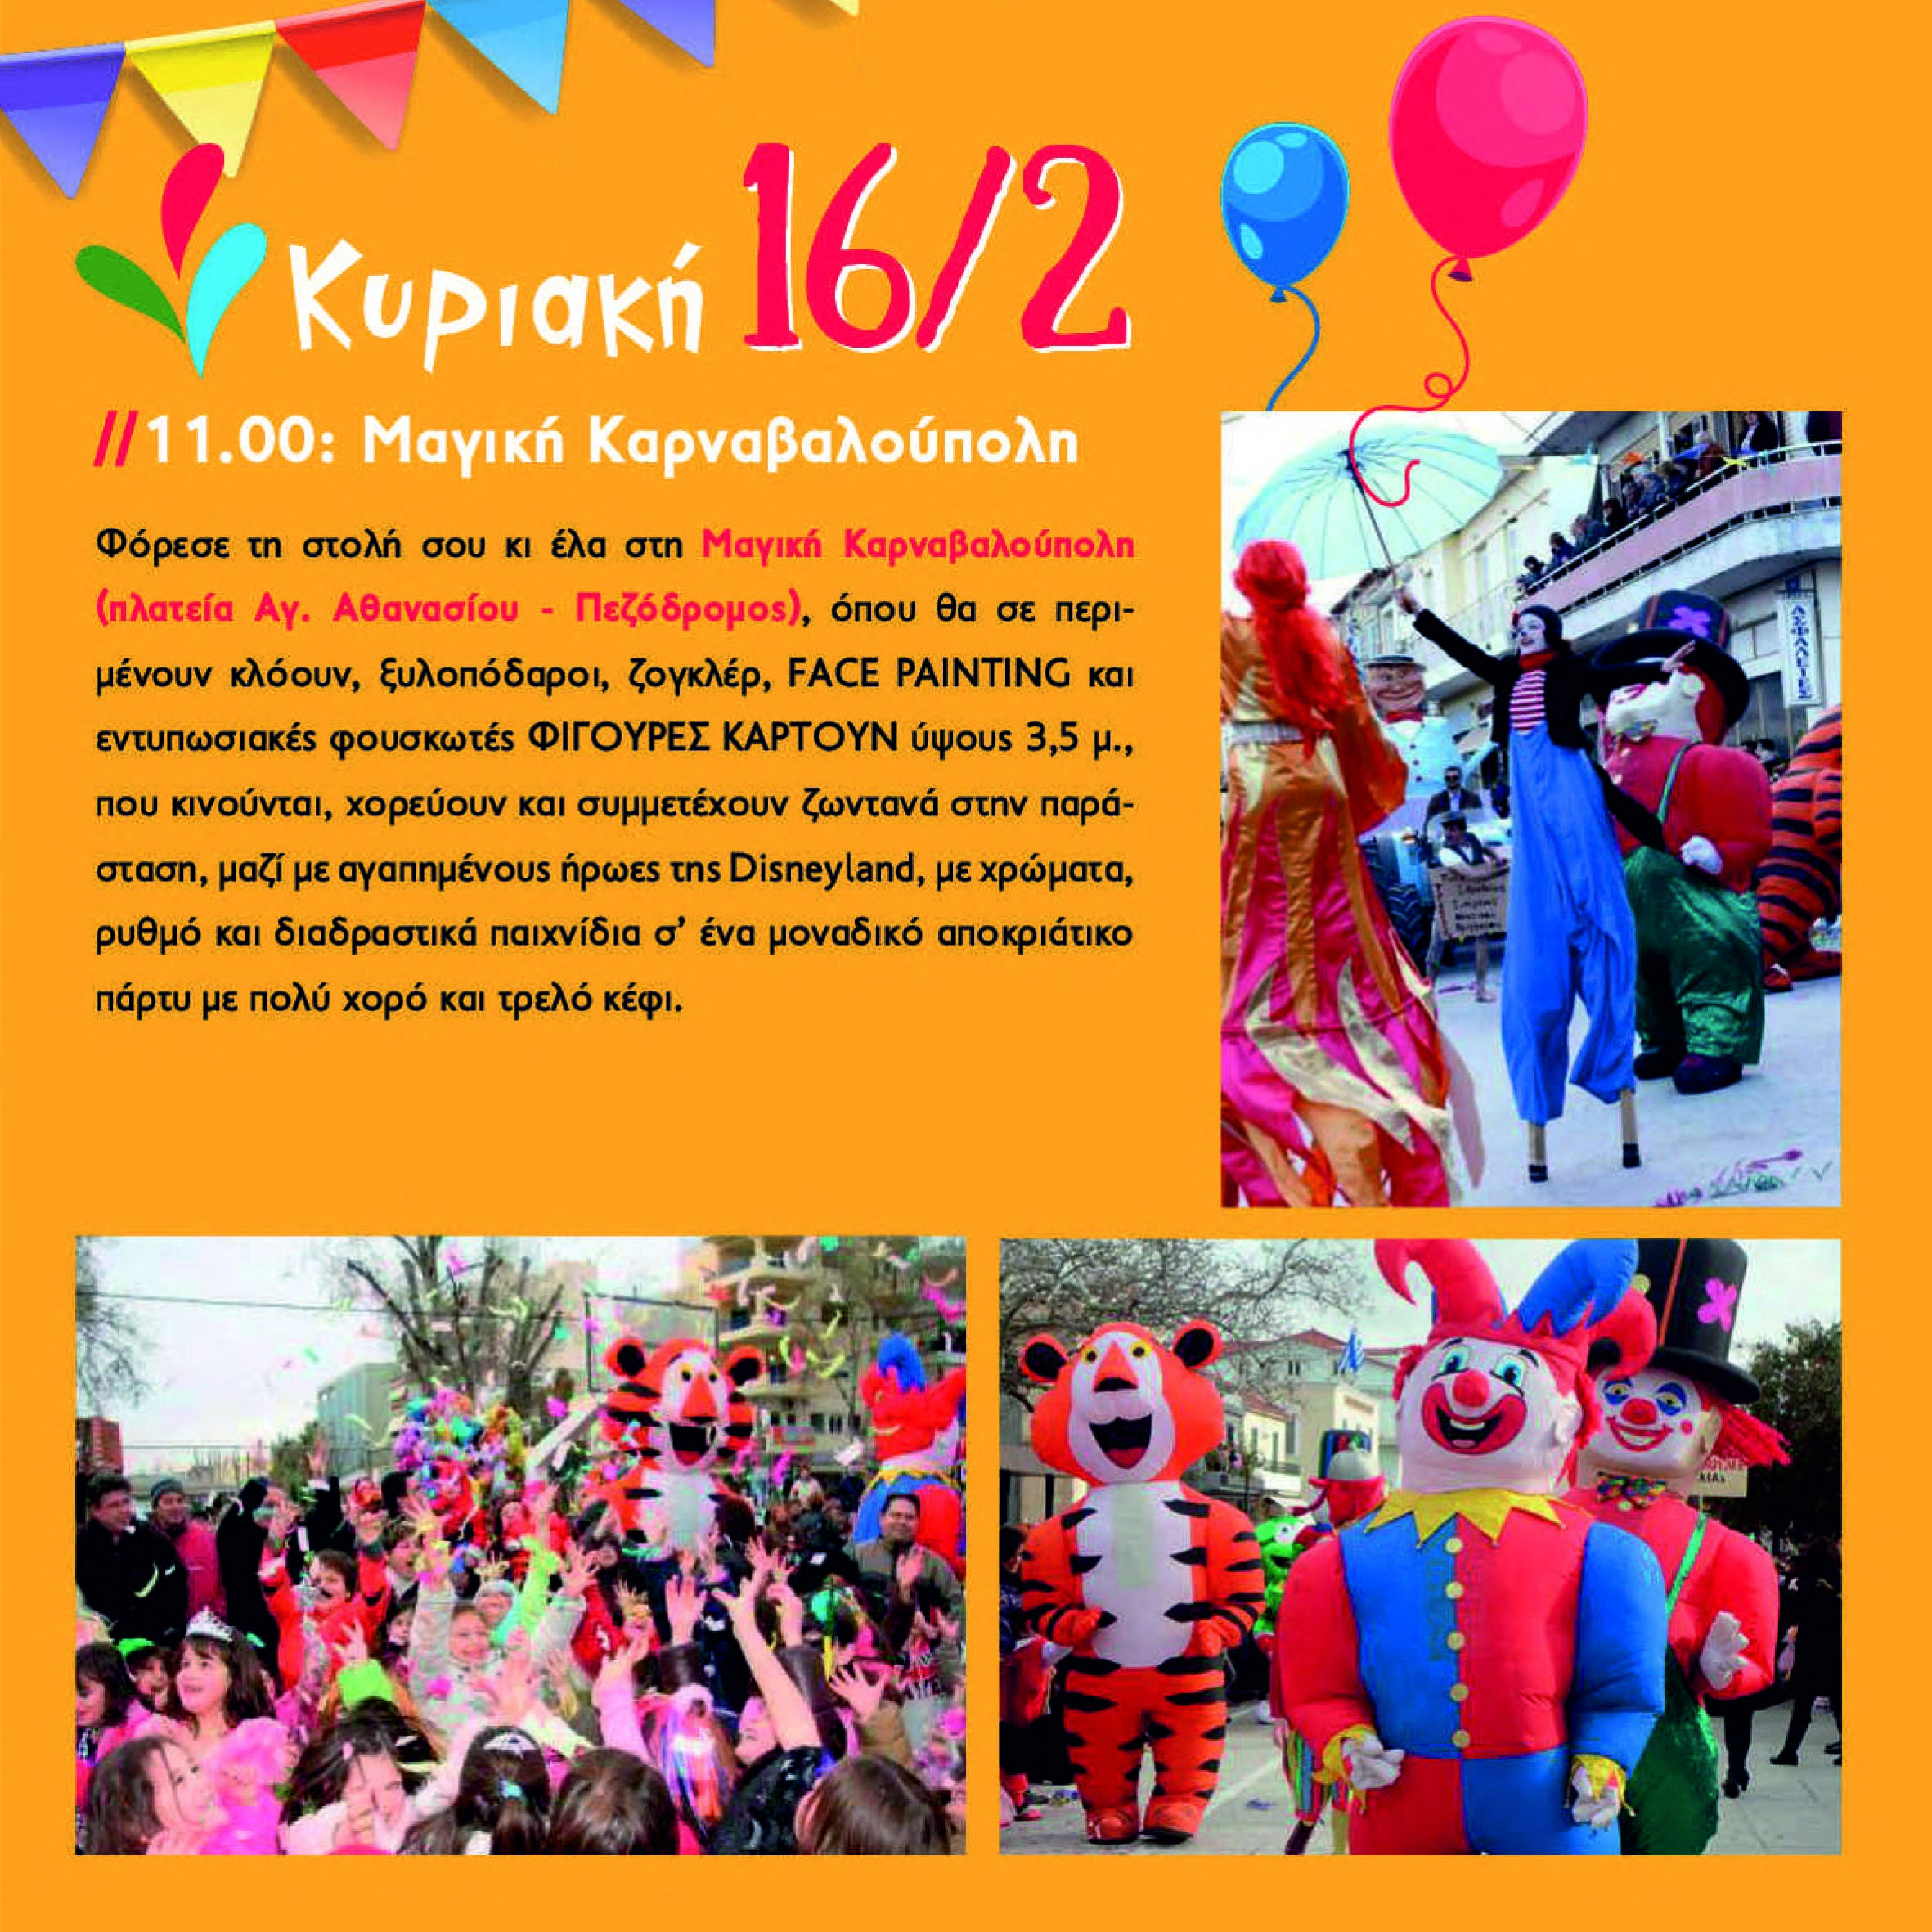 Δήμος Ήλιδας: Με σημαντικές εκδηλώσεις για όλες τις ηλικίες συνεχίζεται το Καρναβάλι Αμαλιάδας Σάββατο και Κυριακή 15 και 16 Φεβρουαρίου